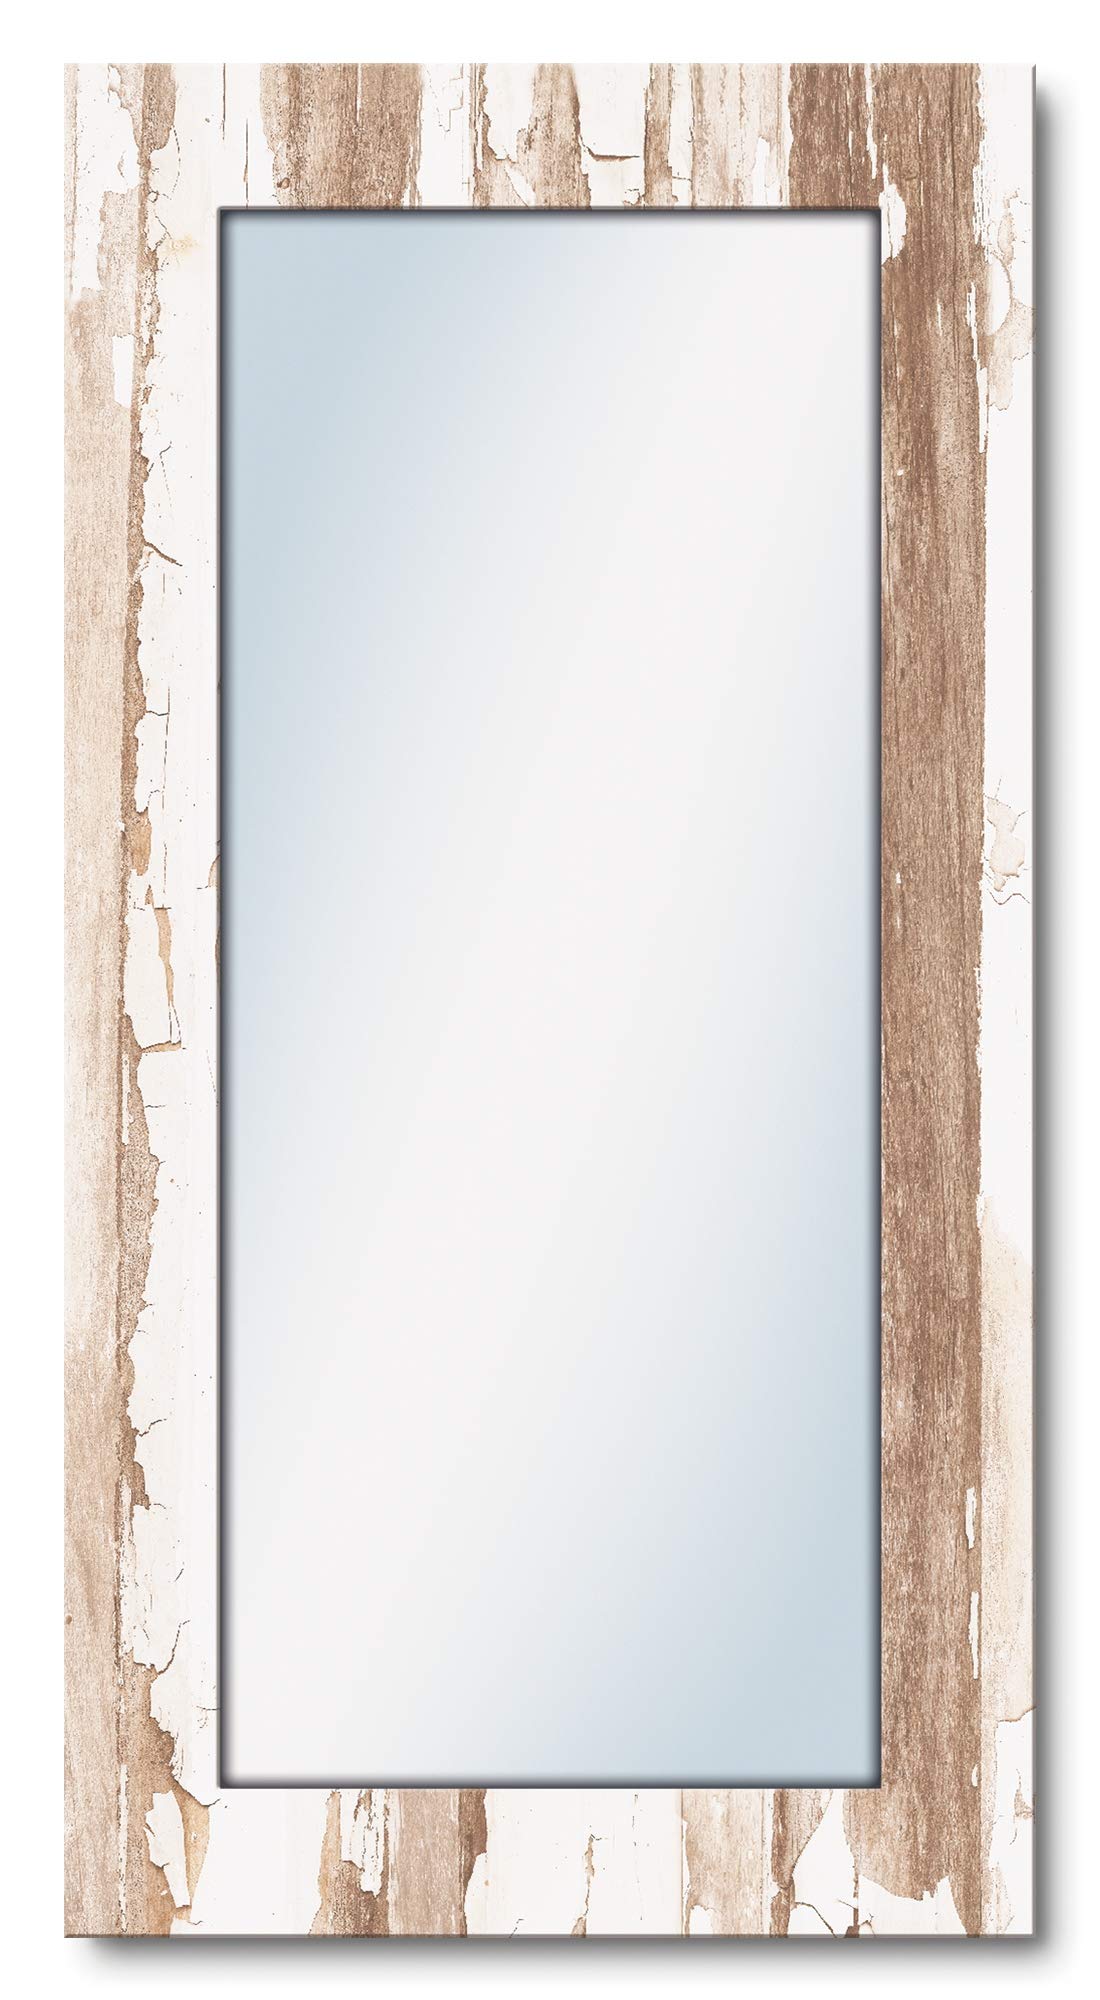 ARTLAND Ganzkörperspiegel mit Rahmen Holz 60x120 cm Wandspiegel zum Aufhängen Shabby Chic Landhausstil Kunst Used Look T9ID